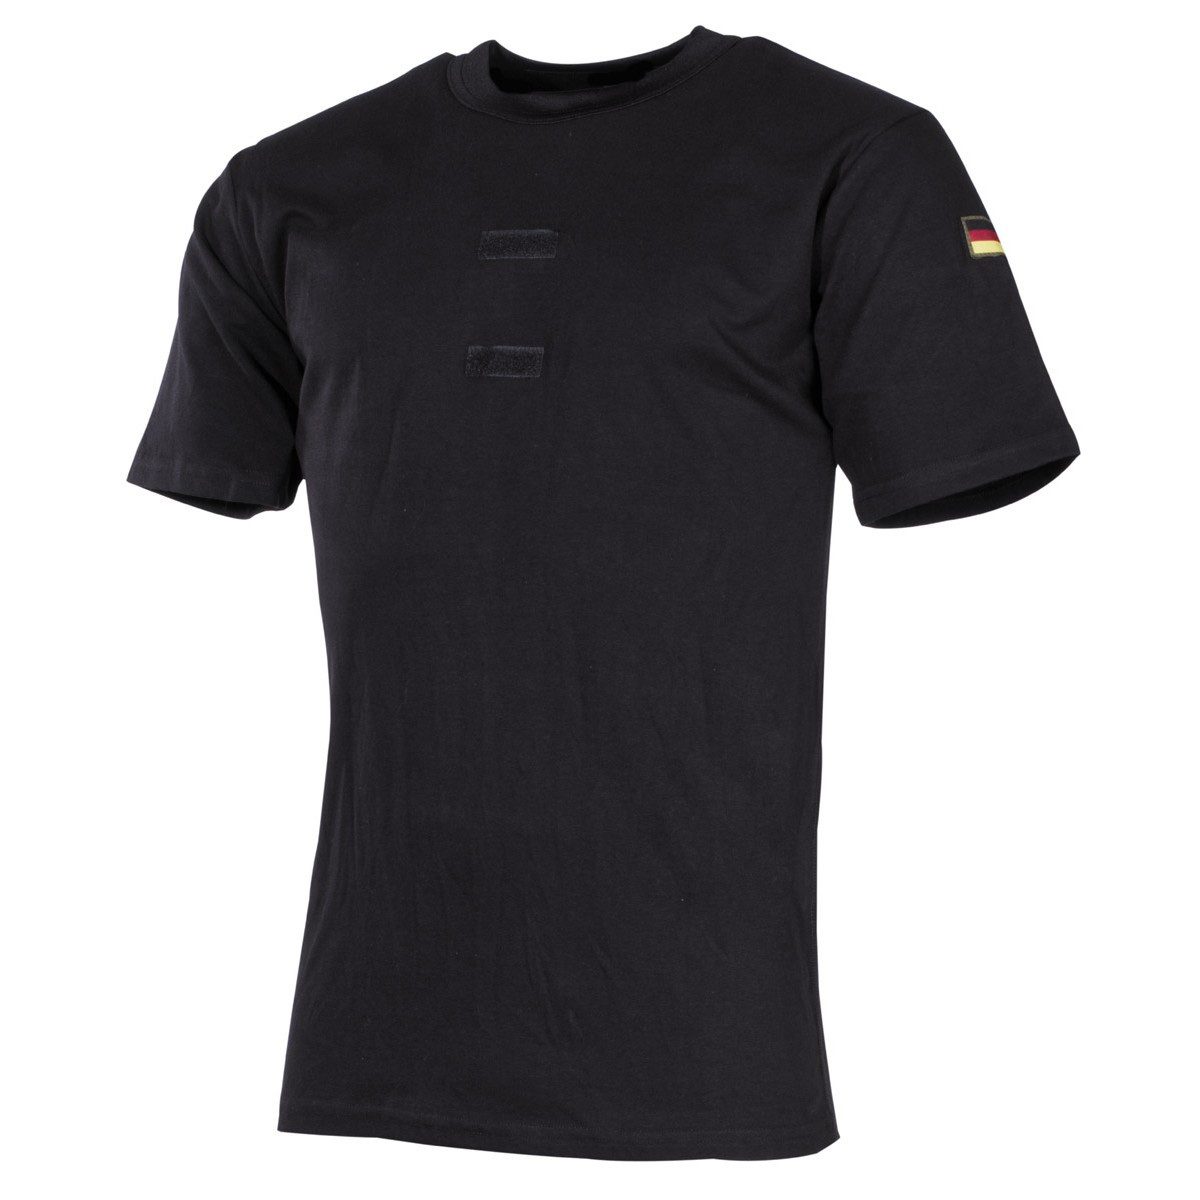 MFH Funktionsunterhemd Bundeswehr Tropenunterhemd, schwarz, Klett, Nationalitätsabzeichen 6